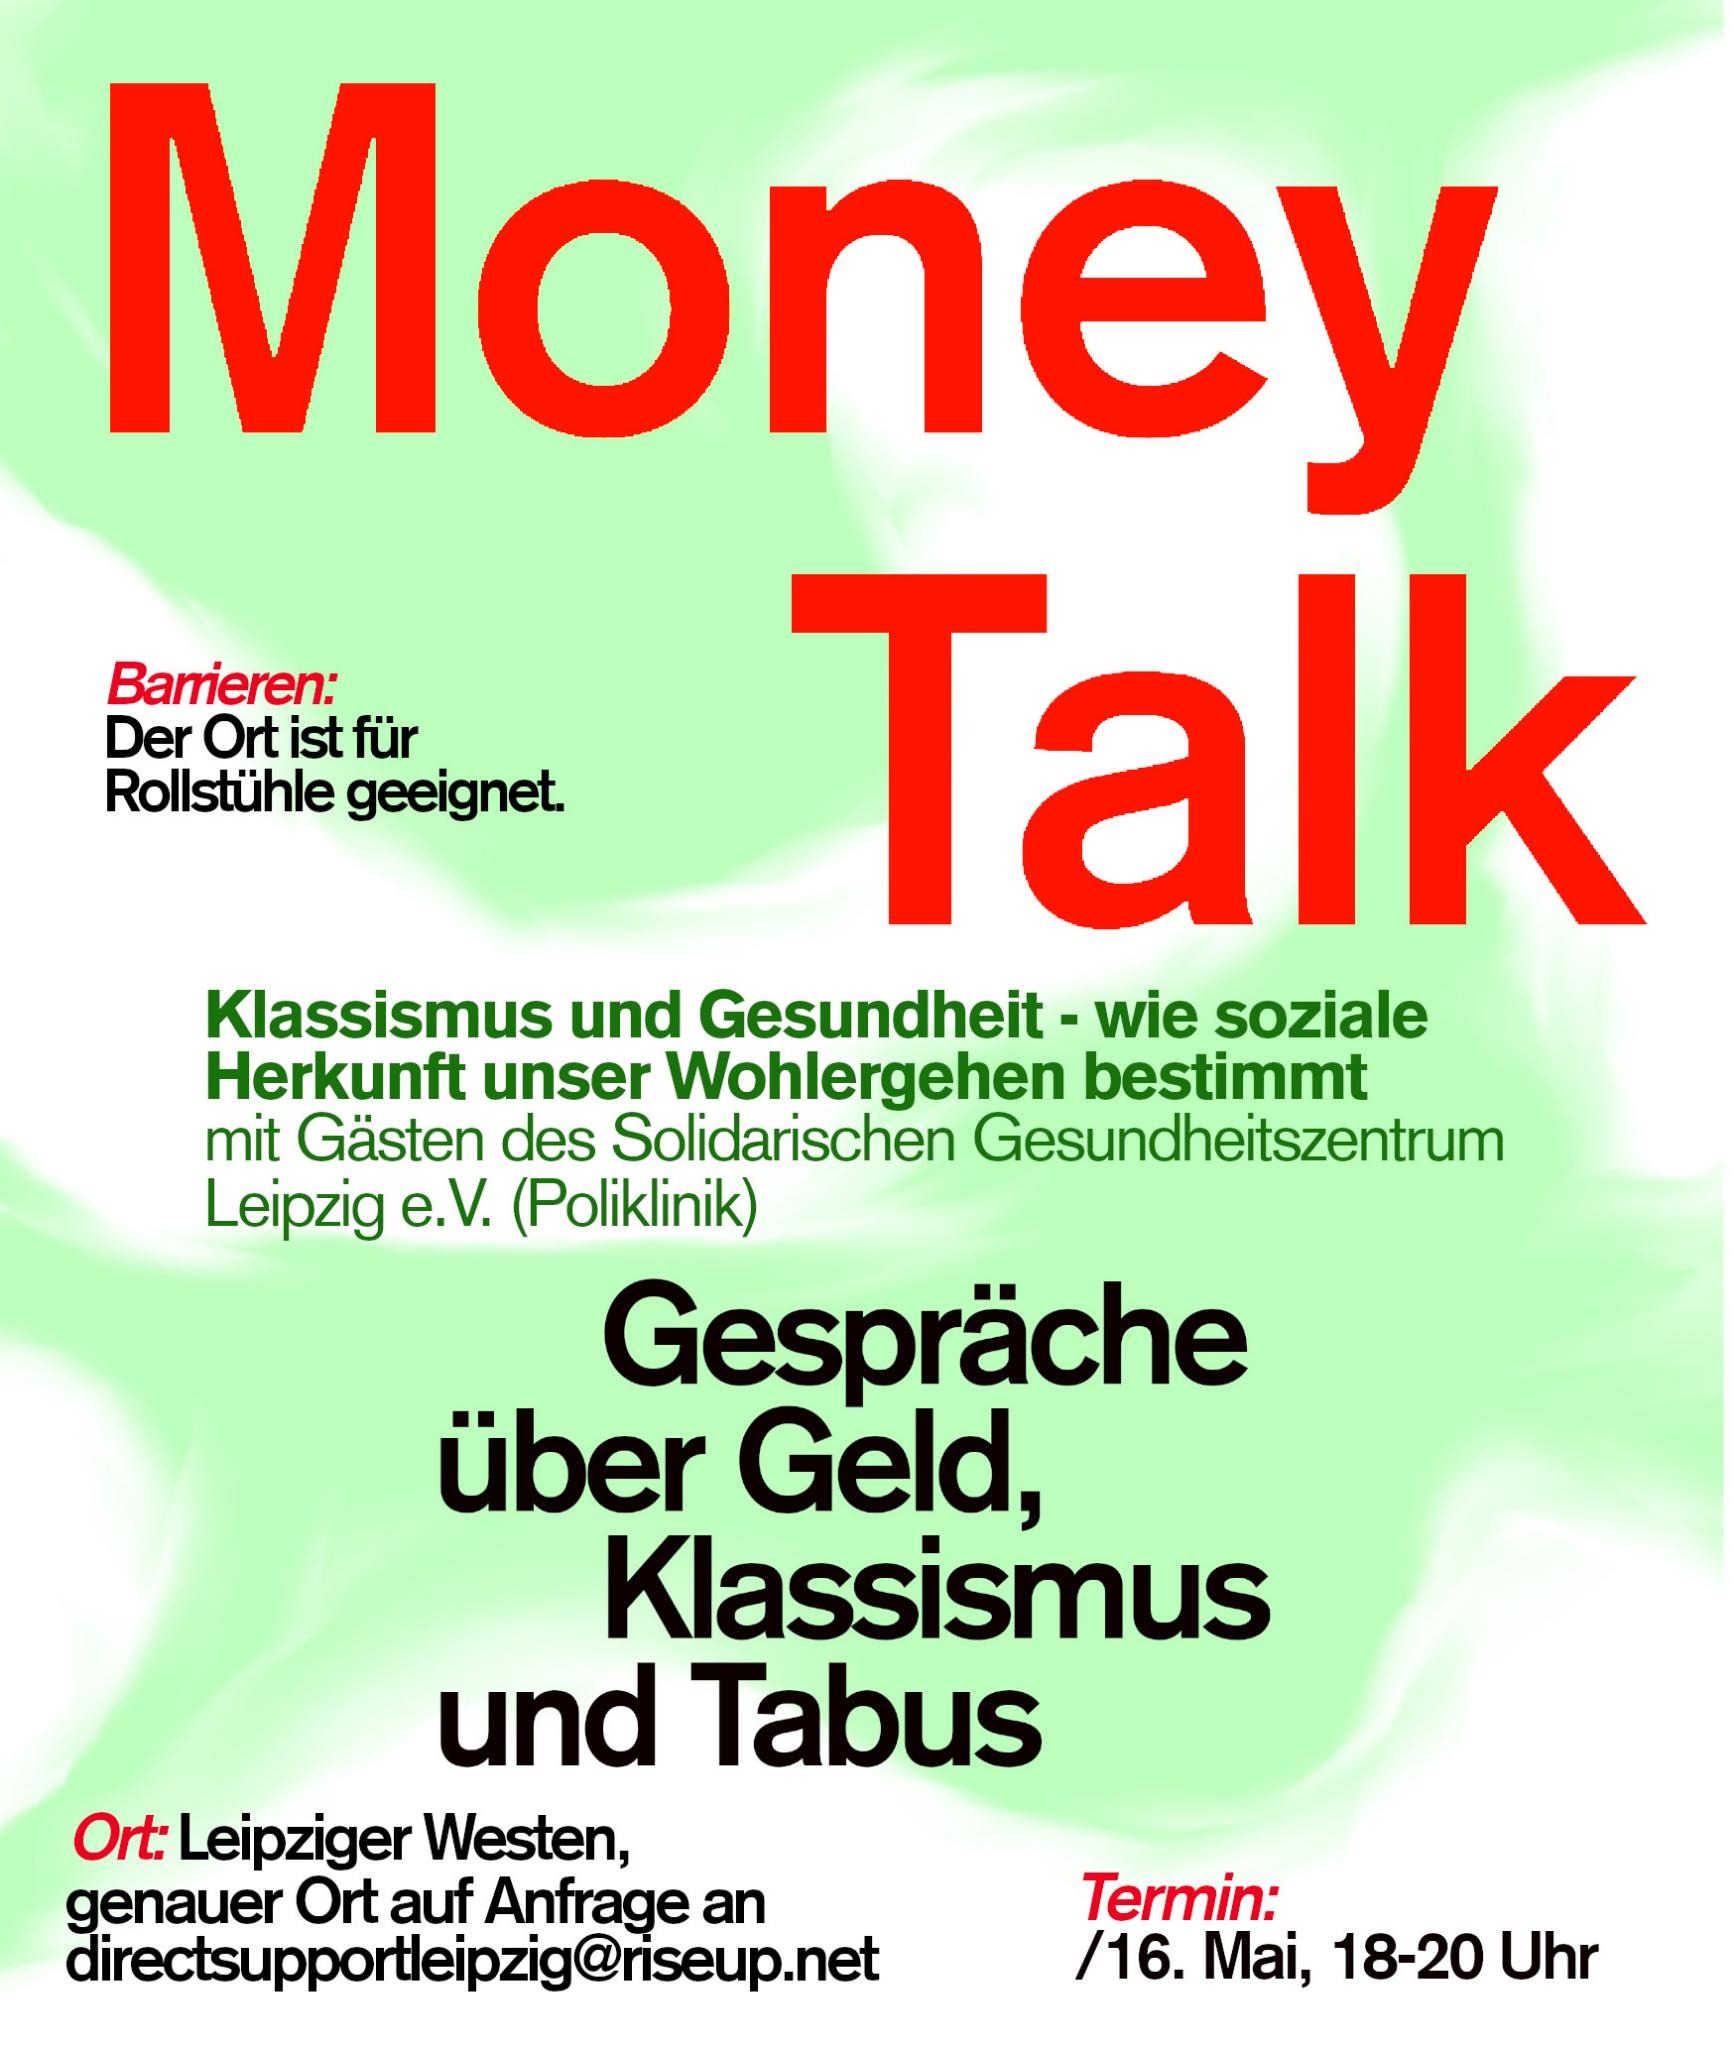 MONEY TALK - Gespräche über Geld, Klassismus und Tabus zum Thema "Klassismus und Gesundheit: wie soziale Herkunft unser Wohlergehen bestimmt"